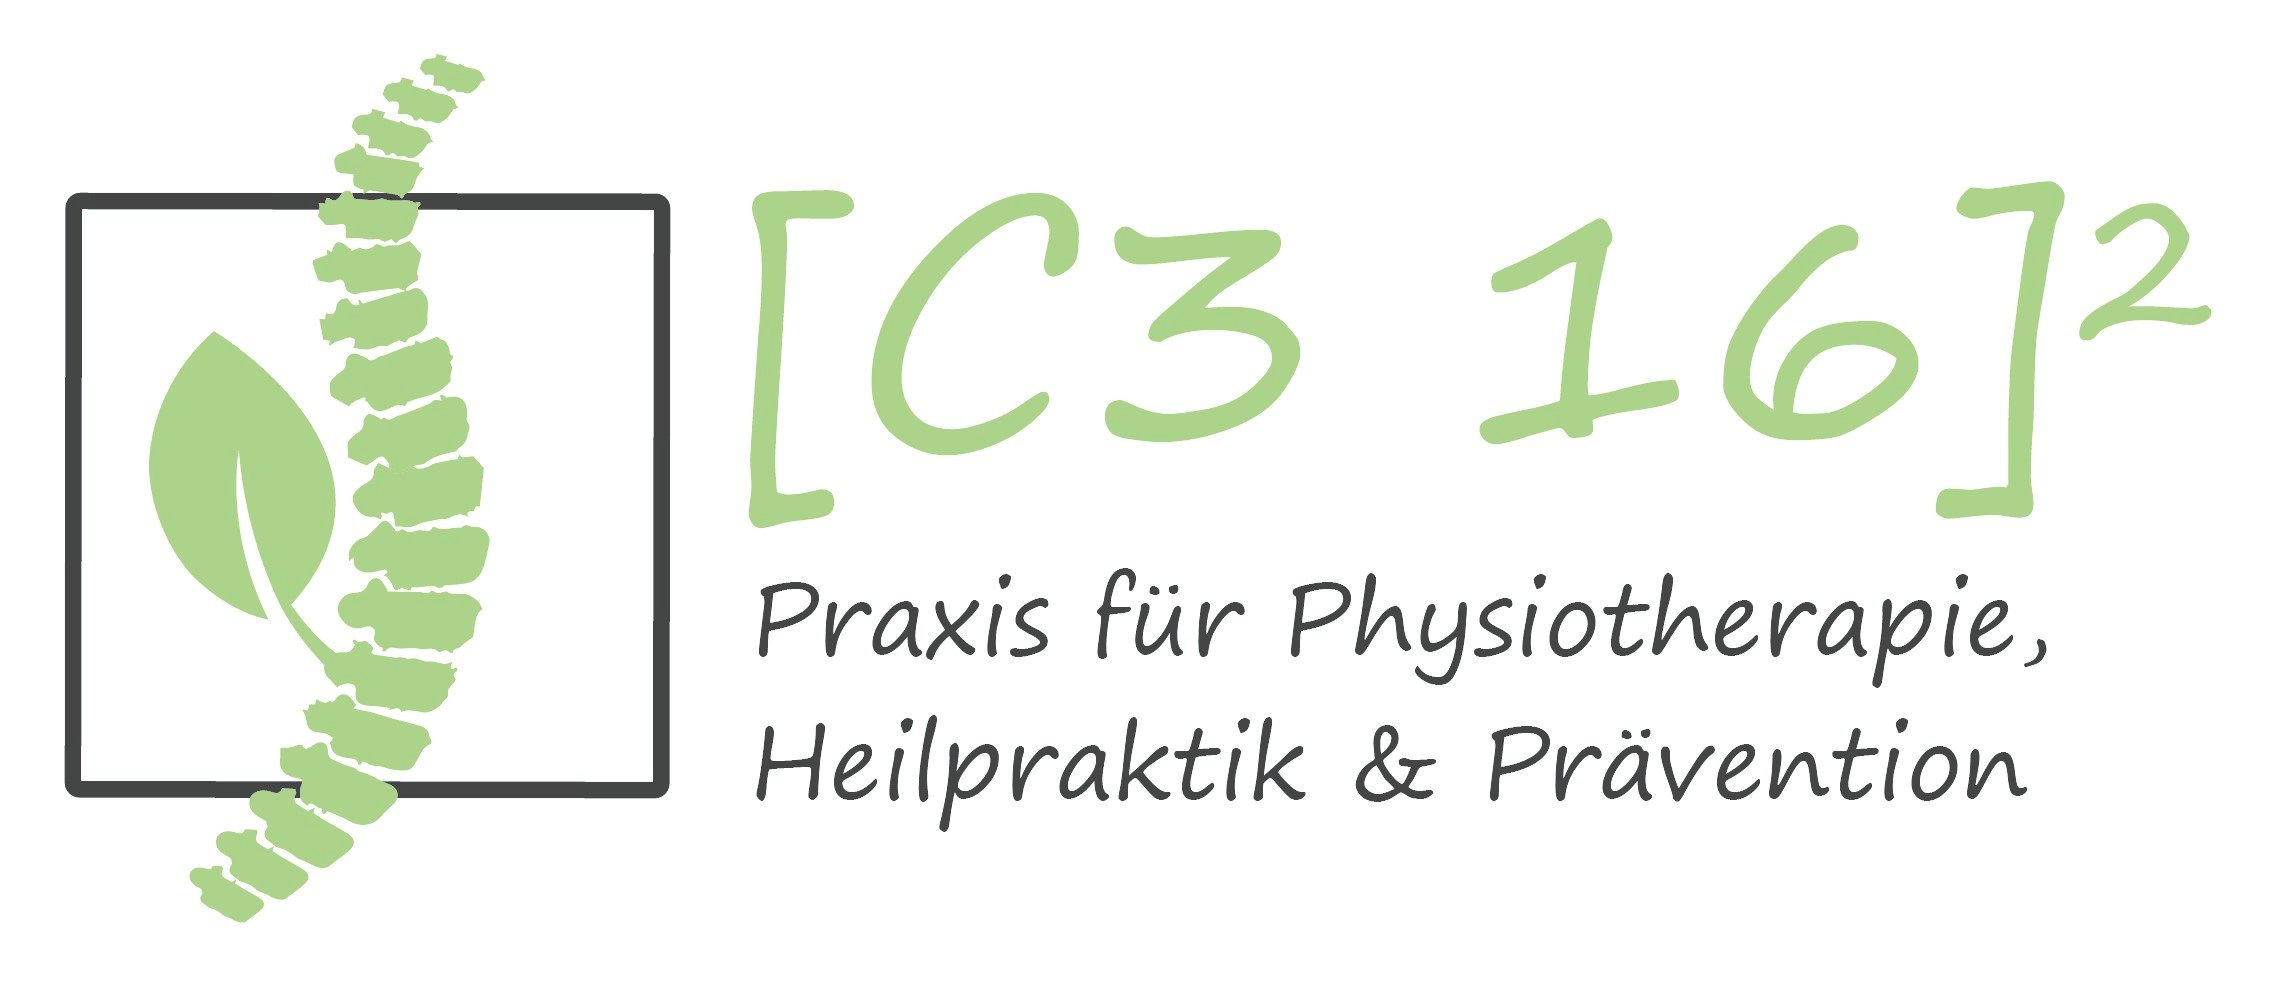 Logo von [C3 16]² Praxis für Physiotherapie, Heilpraktik u. Prävention